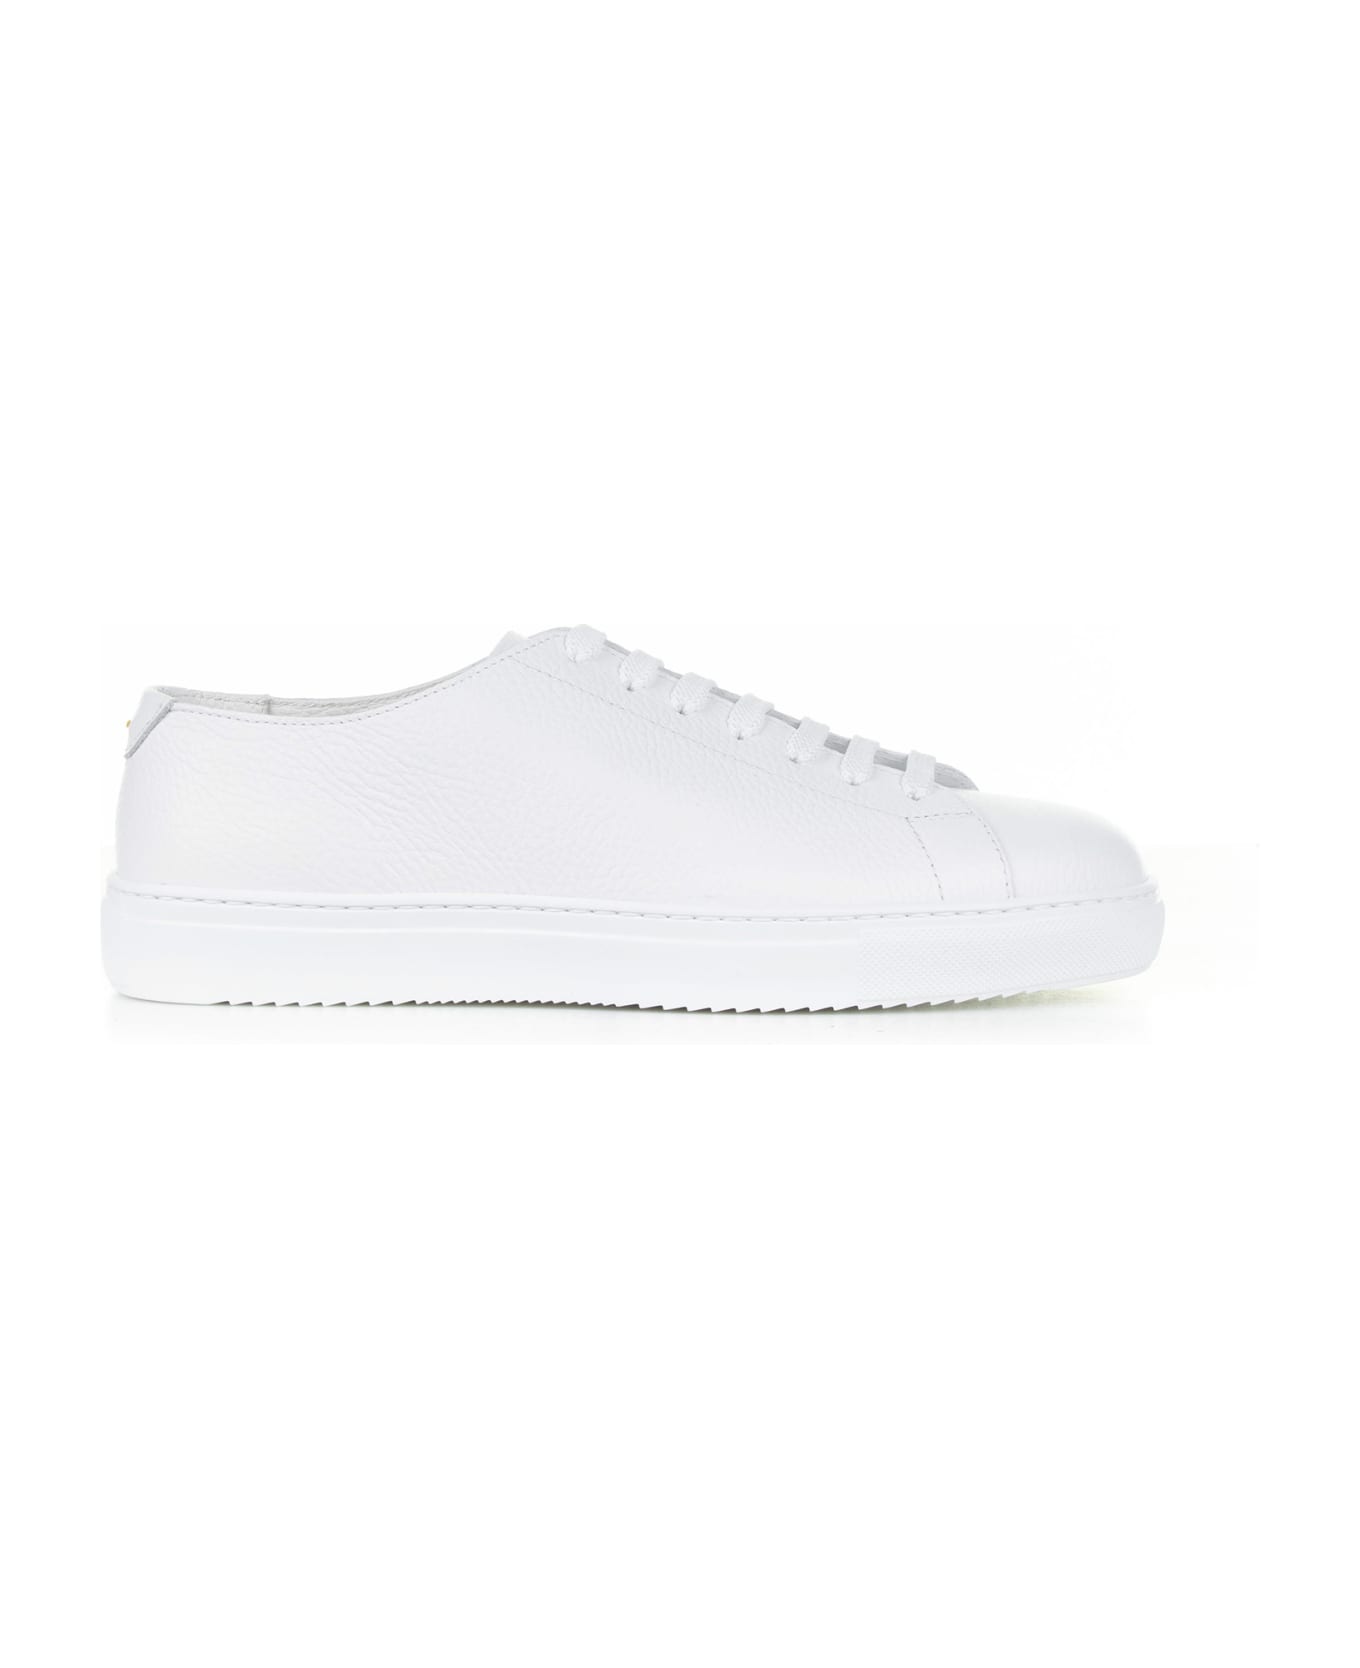 Barrett White Woven Leather Sneaker - BIANCO スニーカー